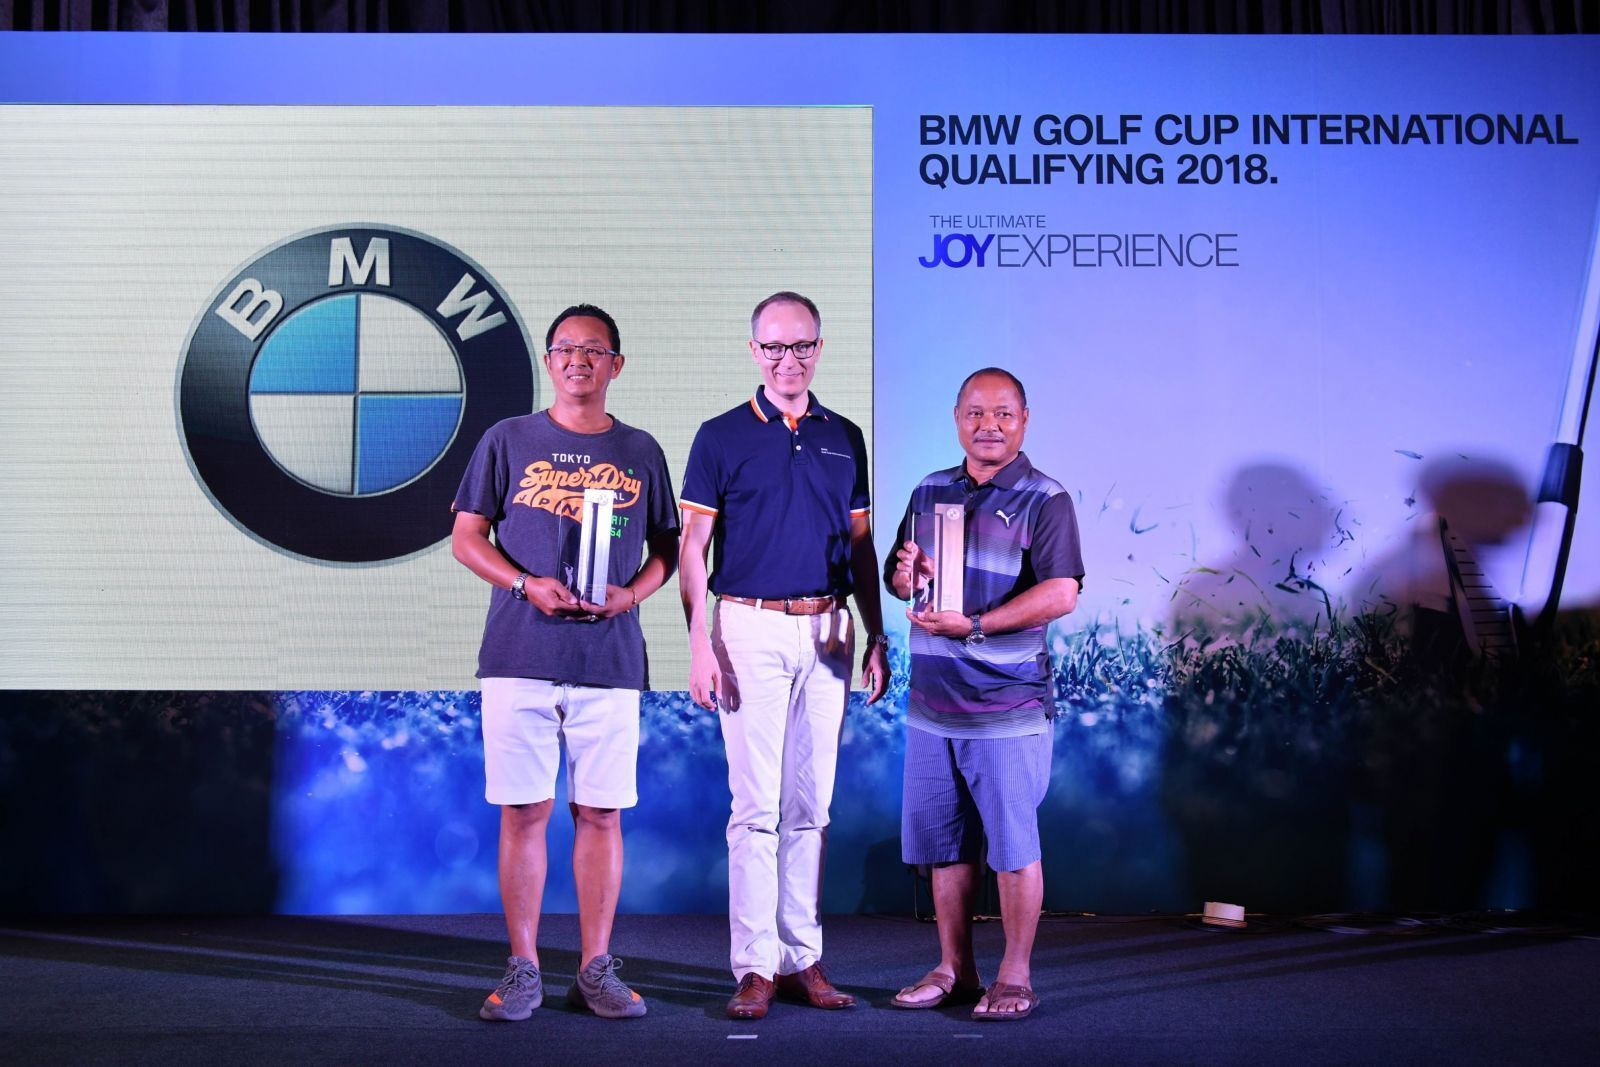  BMW Golf Cup International 2018